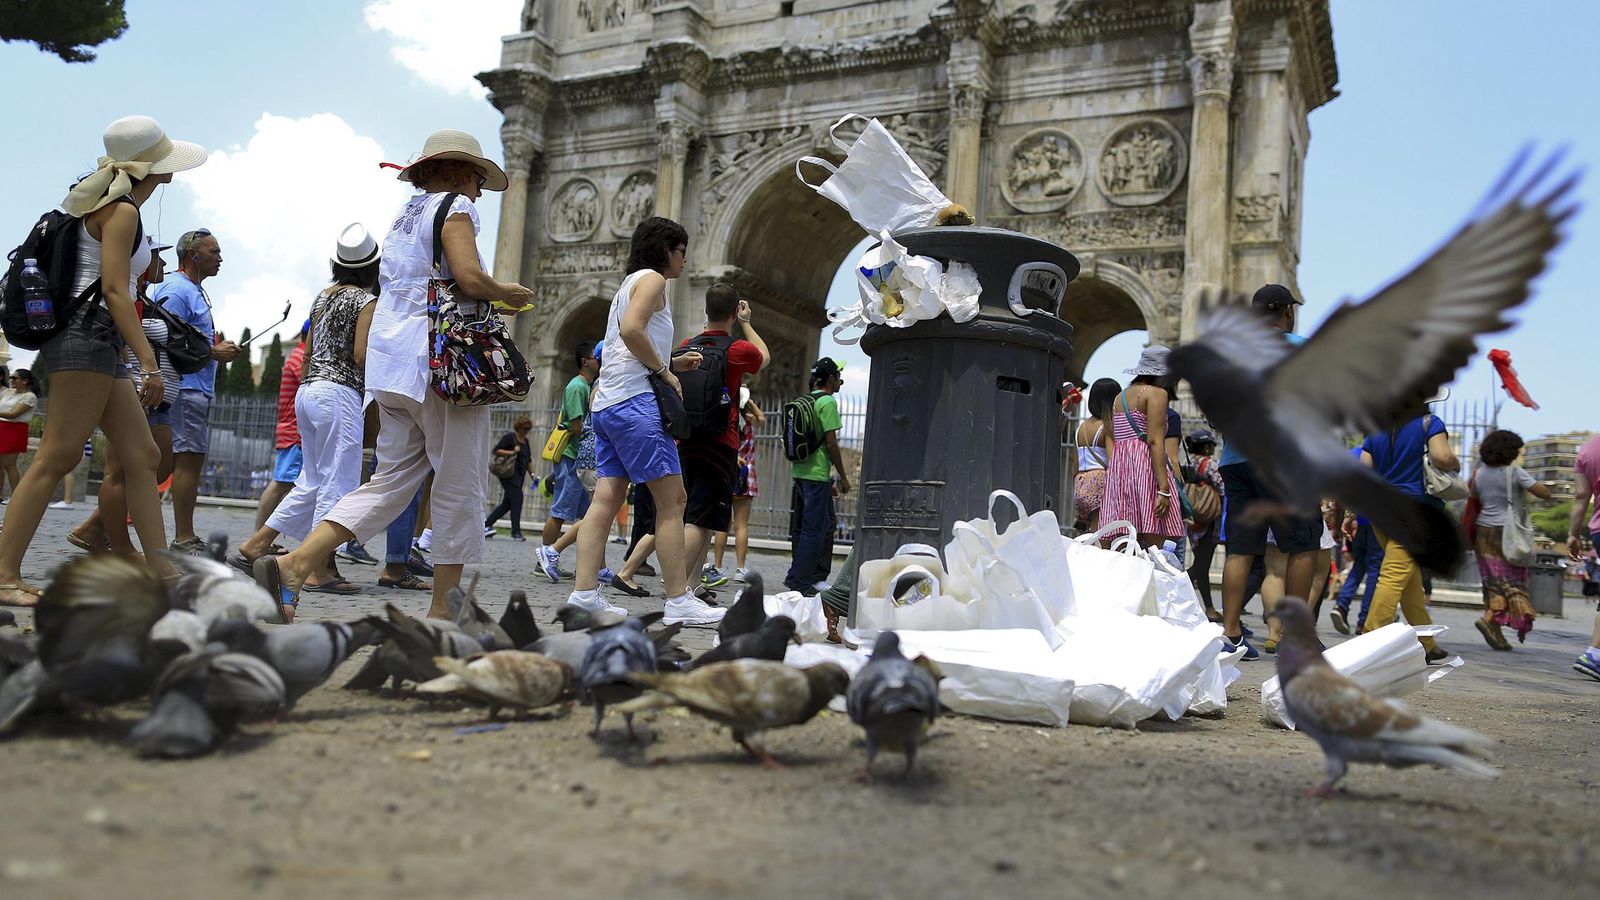 Foto: Un grupo de palomas come de un montón de basura frente al Arco de Constantino en Roma, en julio de 2015 (Reuters)